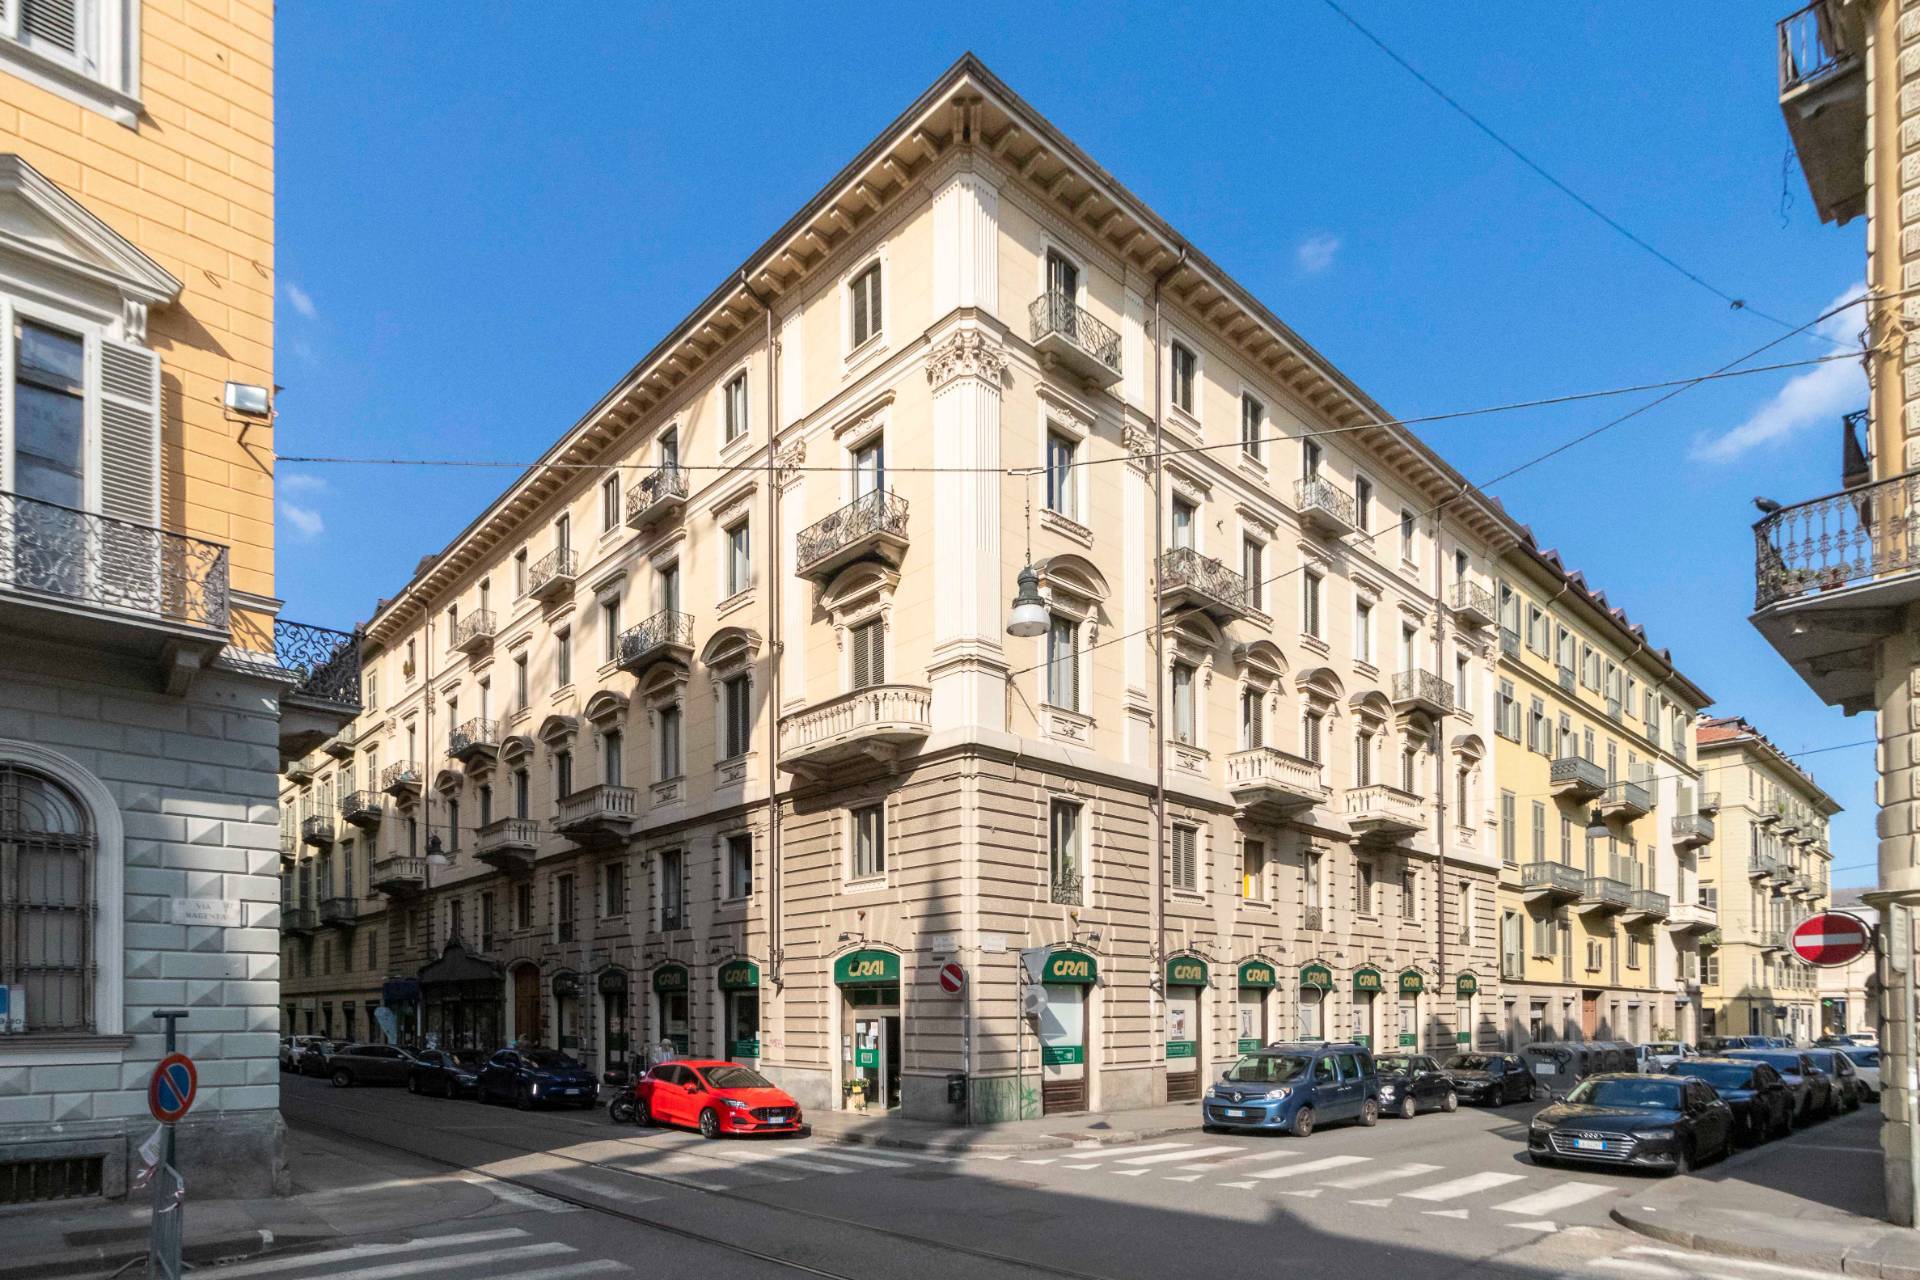 Ufficio in vendita Torino